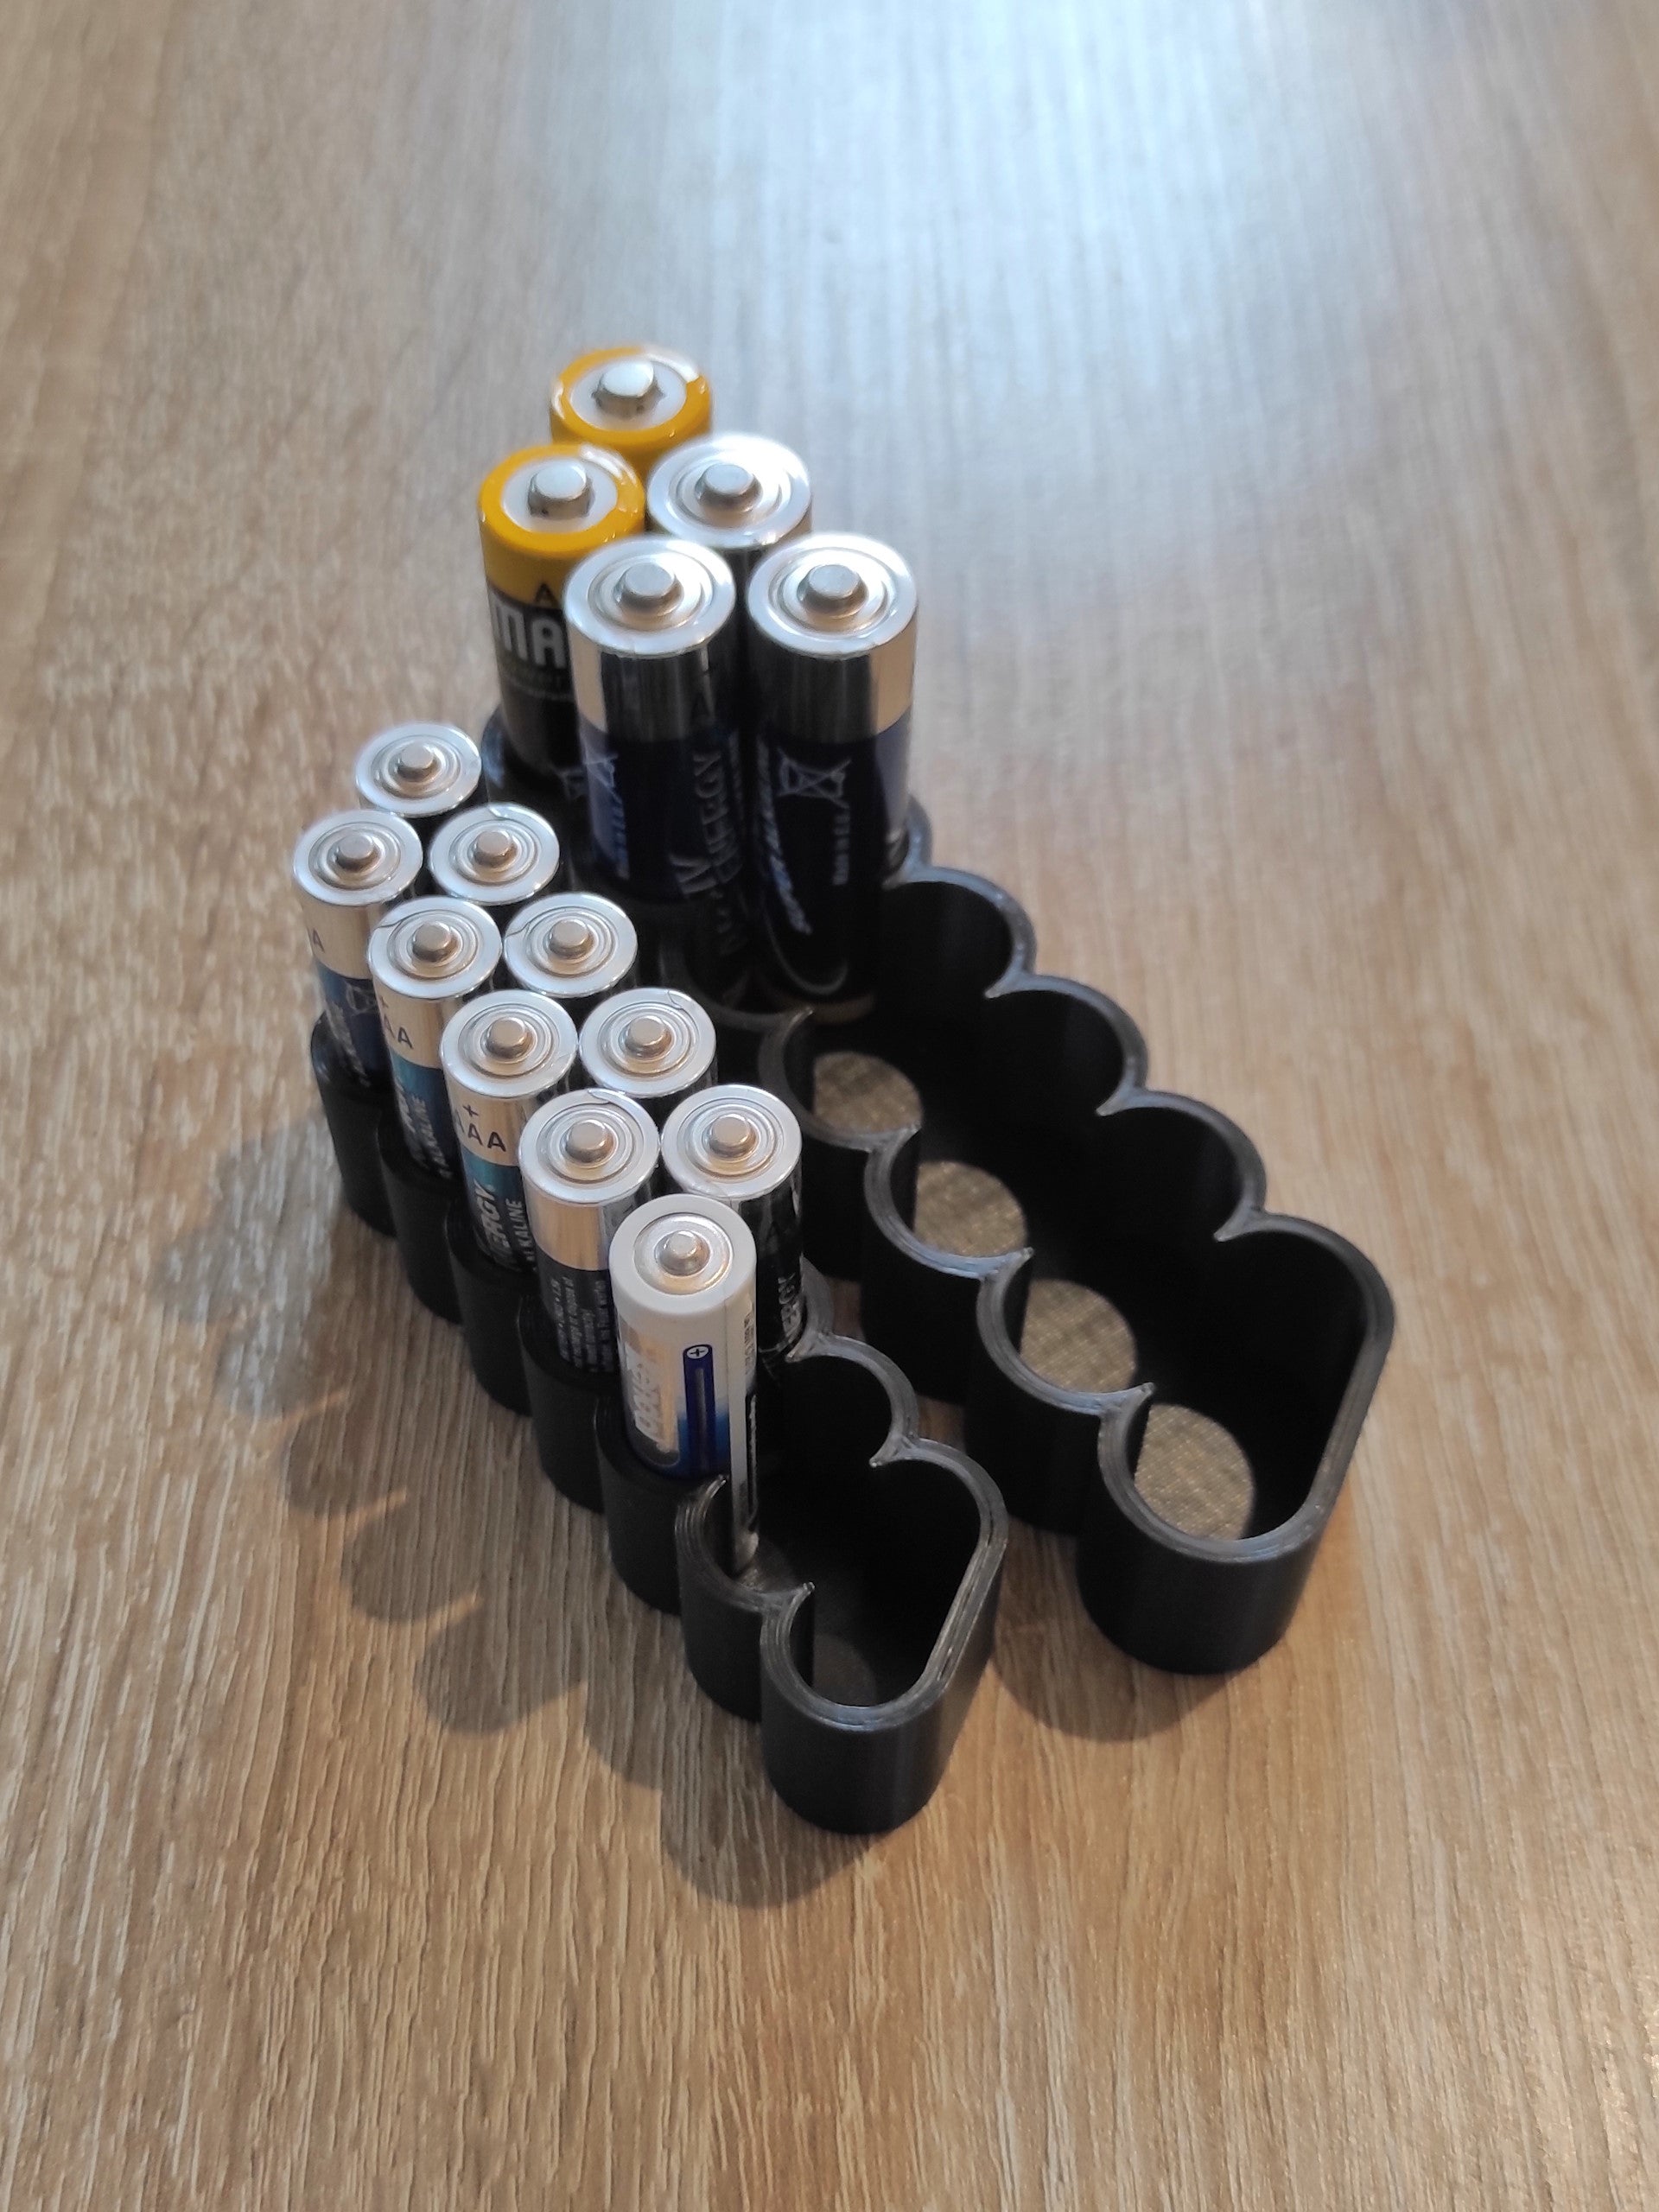 Batterihållare för AA- och AAA-batterier